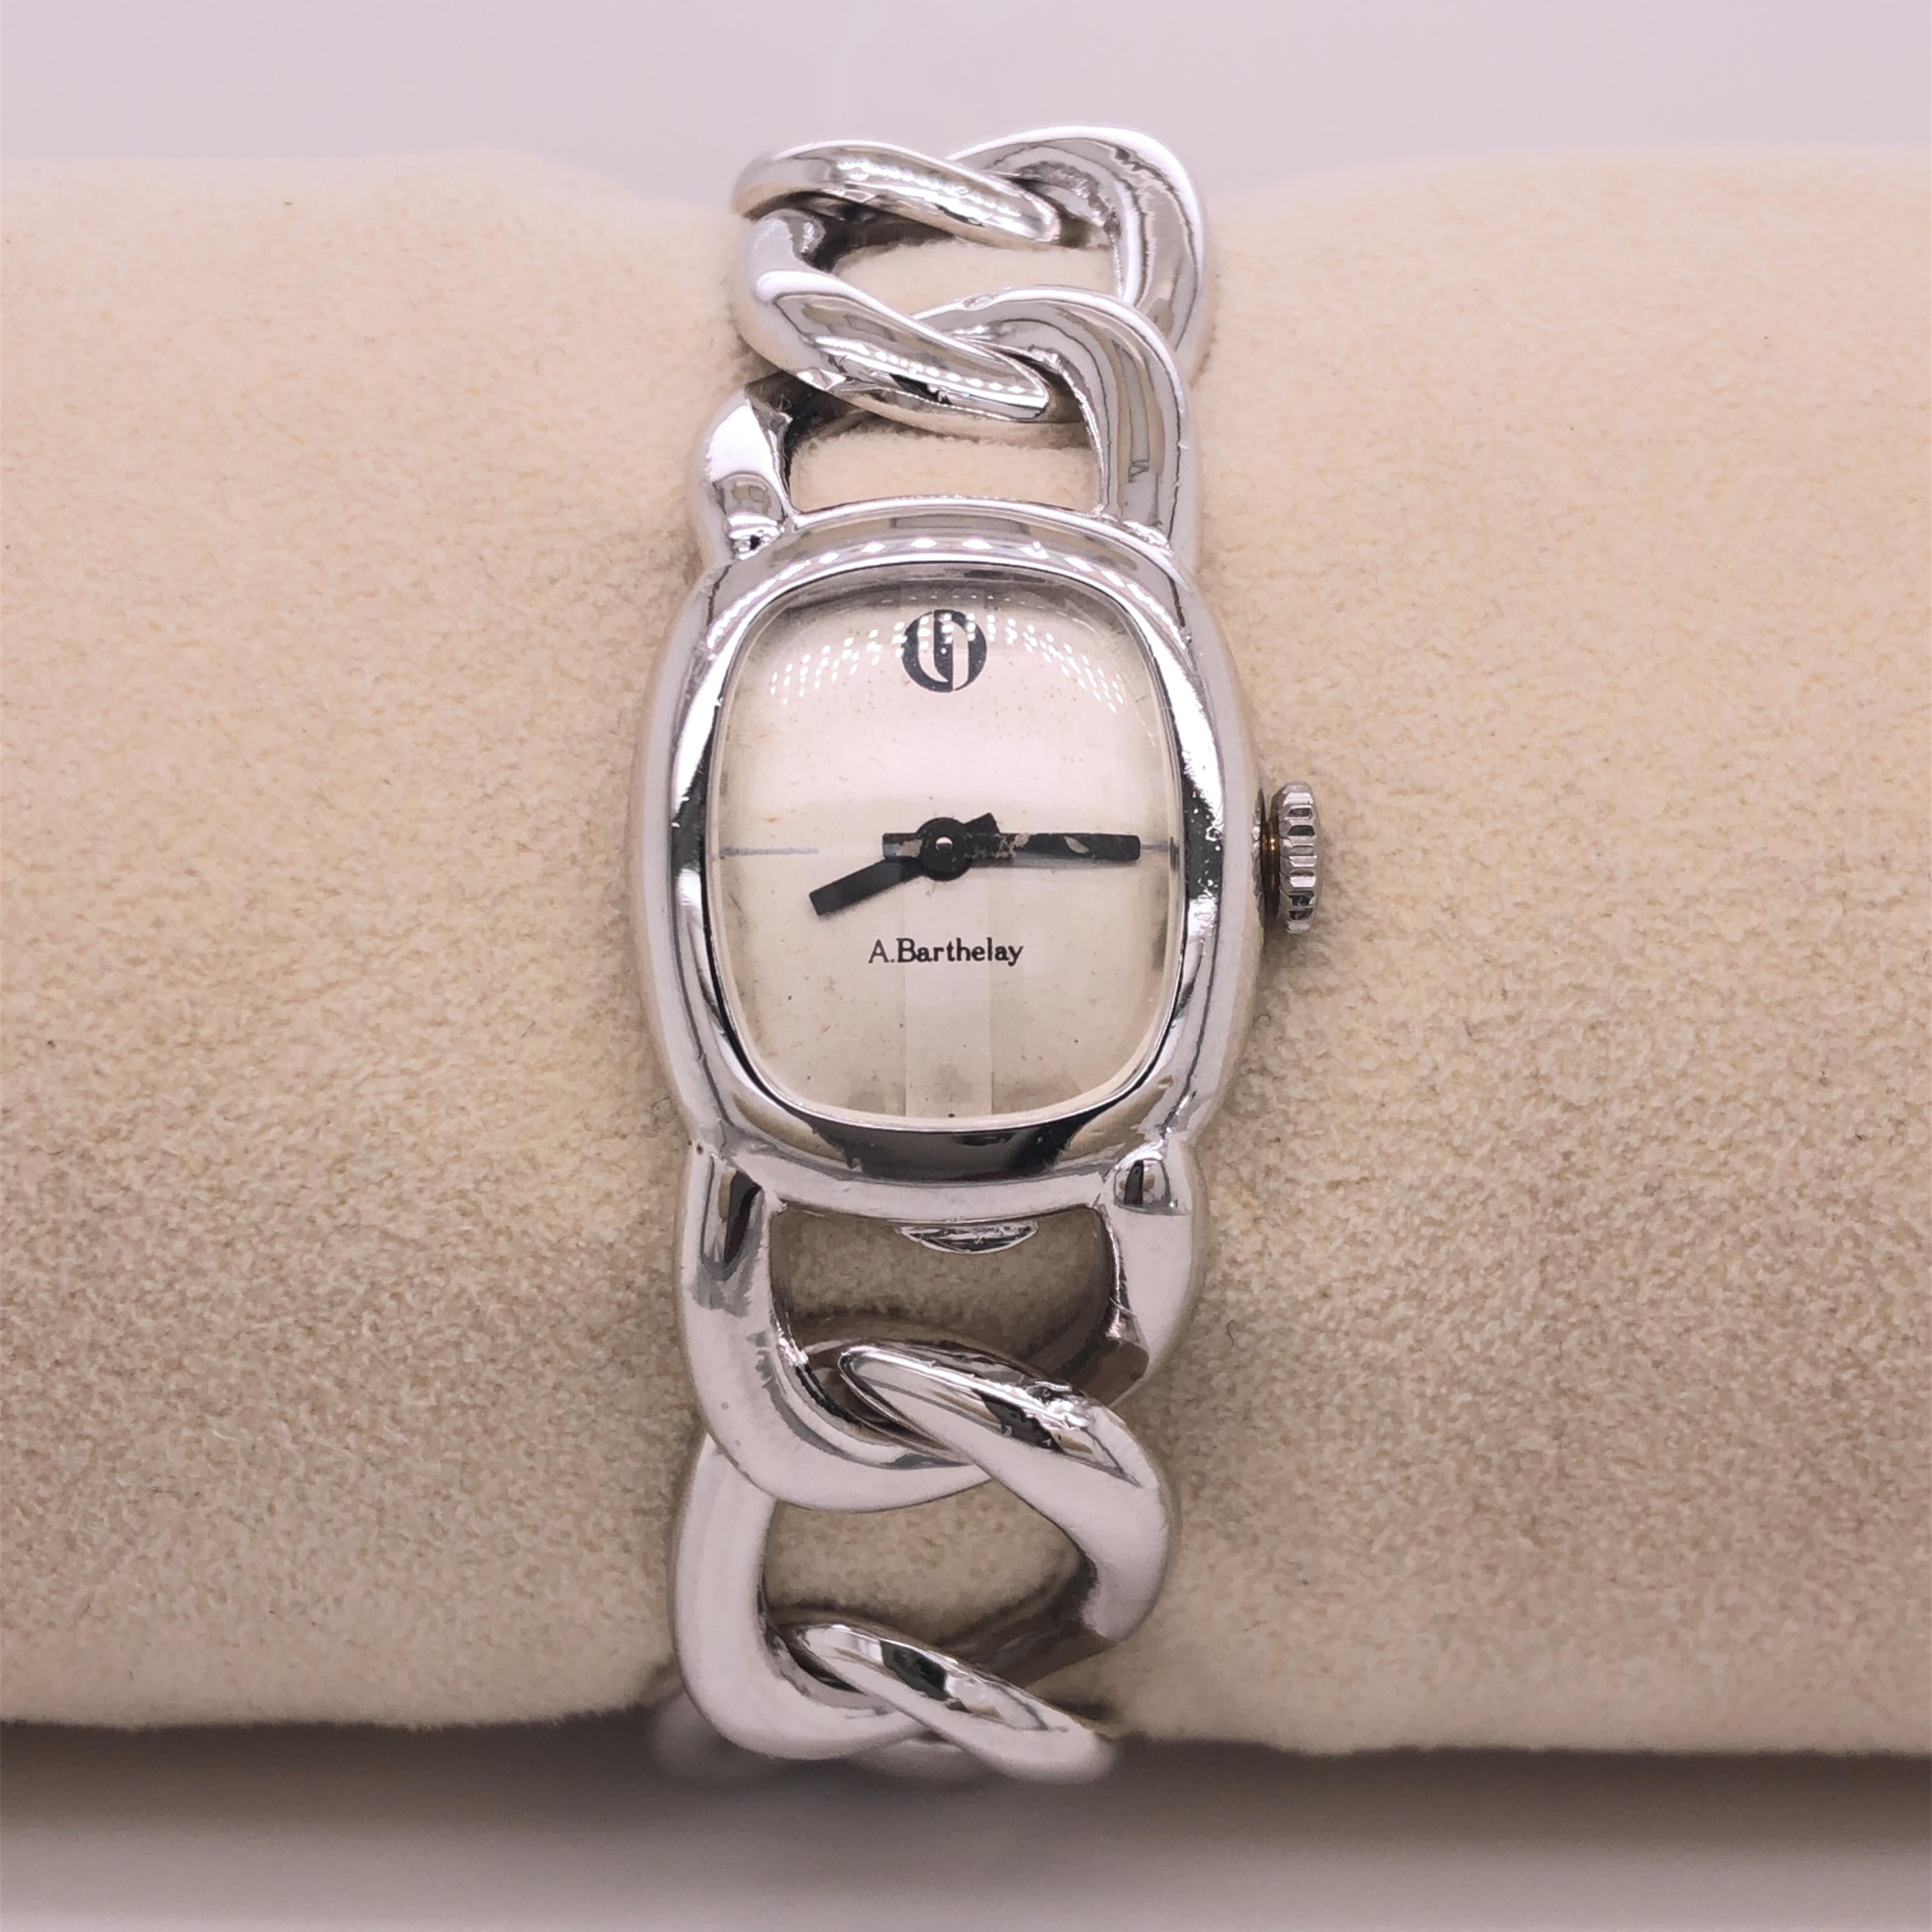 Original 1970's, Exquisite Alexis Barthelay Wrist Watch, une pièce iconique caractérisée par un design élégant, unique, absolument chic et intemporel, le boîtier de la montre et le bracelet en chaîne sont soudés à la main : cette pièce est